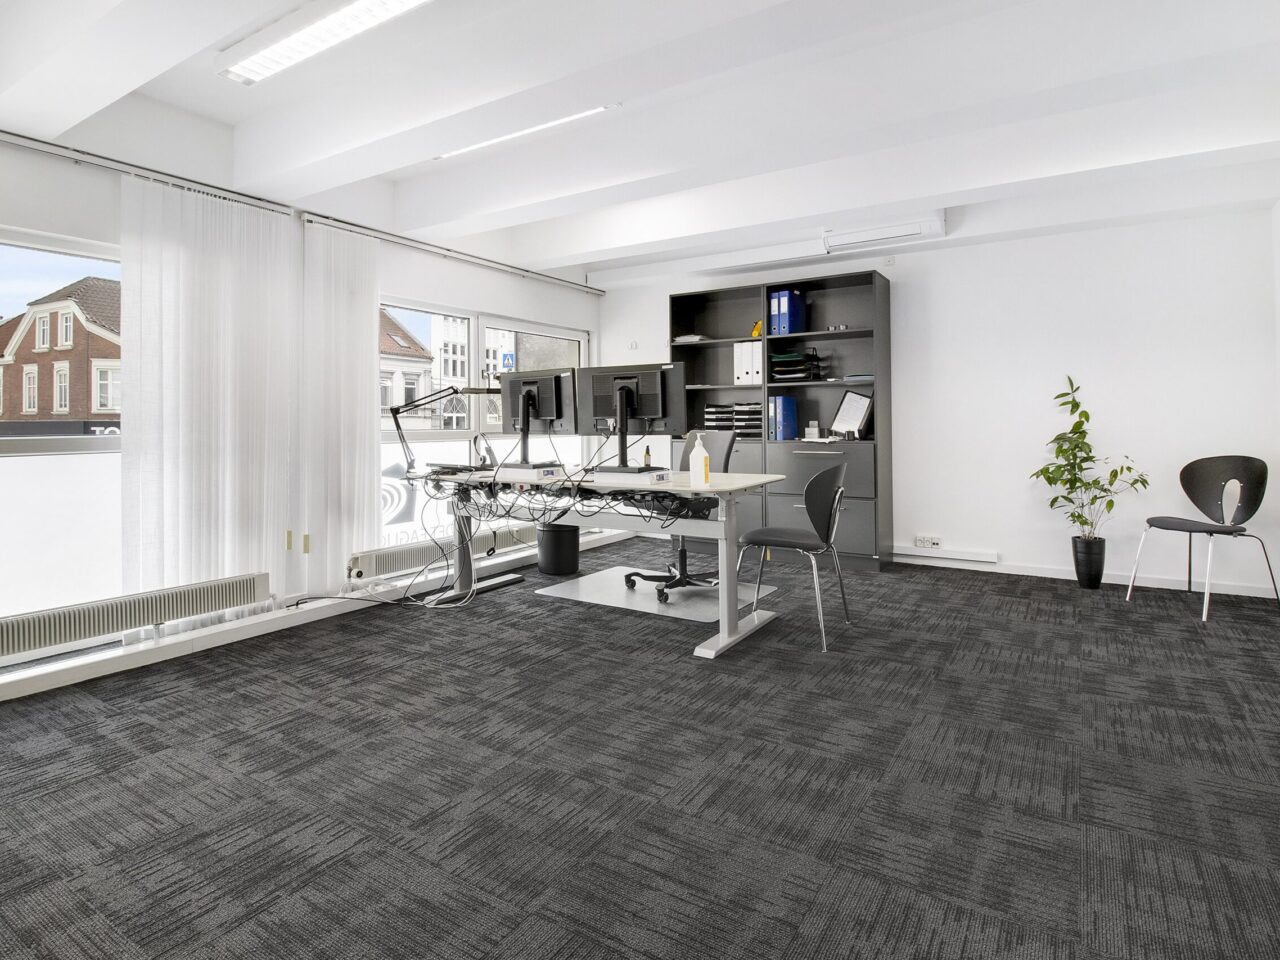 Lokaler til leje i Kolding Centrum - kontor med hvide vægge og loft, grå gulvtæppe og vinduer